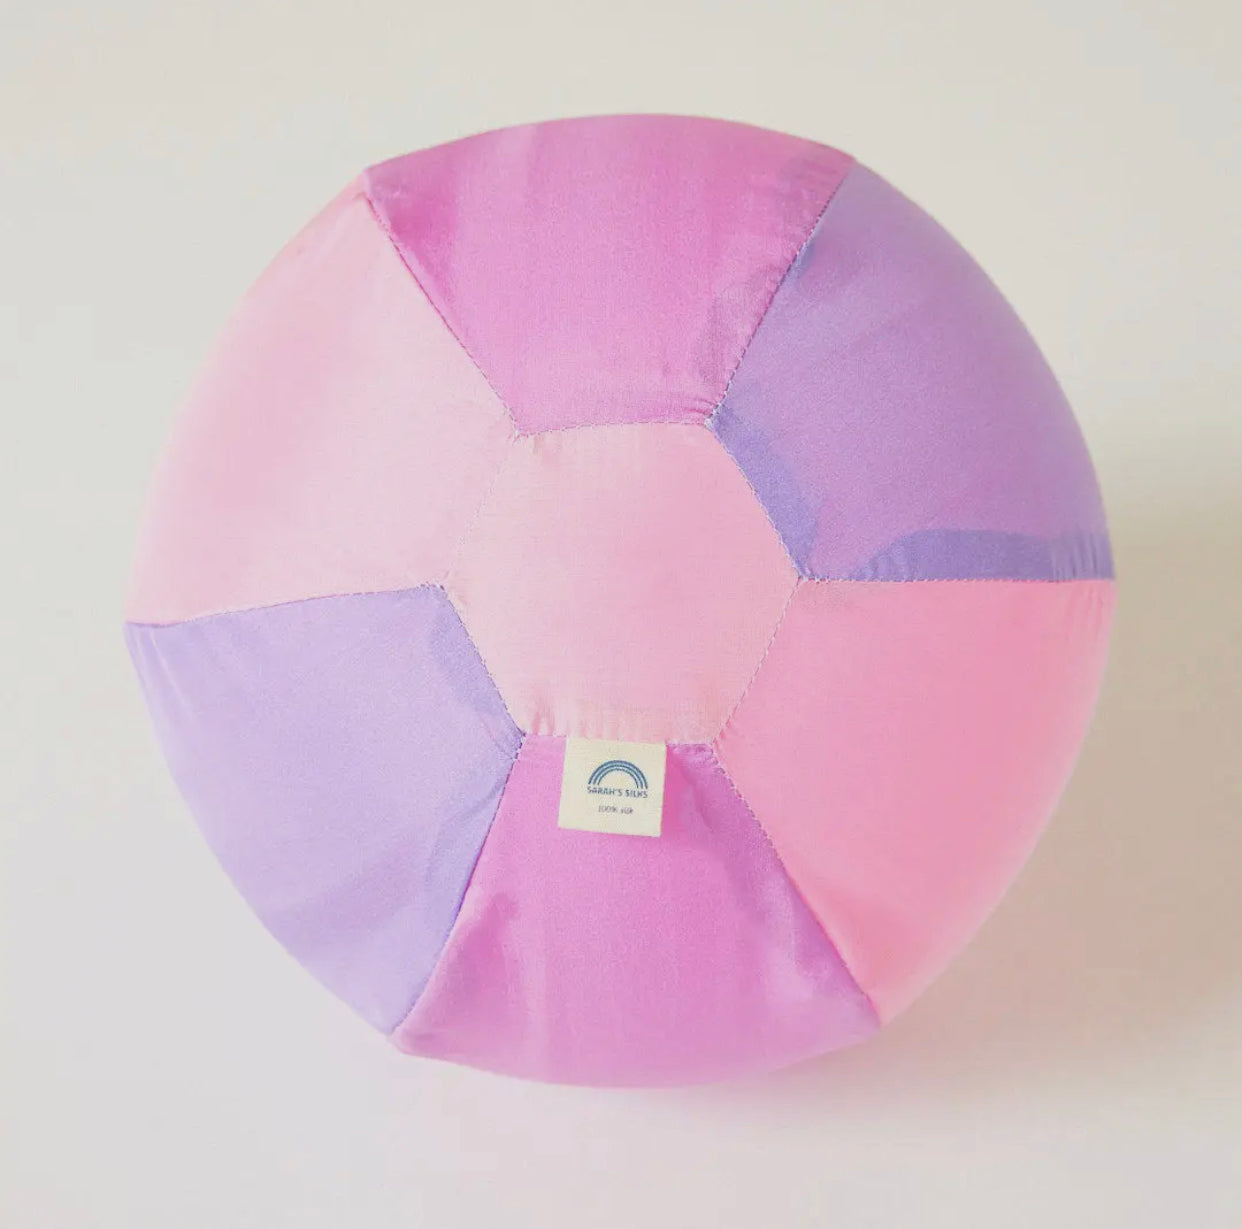 Pink Balloon Ball - 100% Silk Cover for Balloons